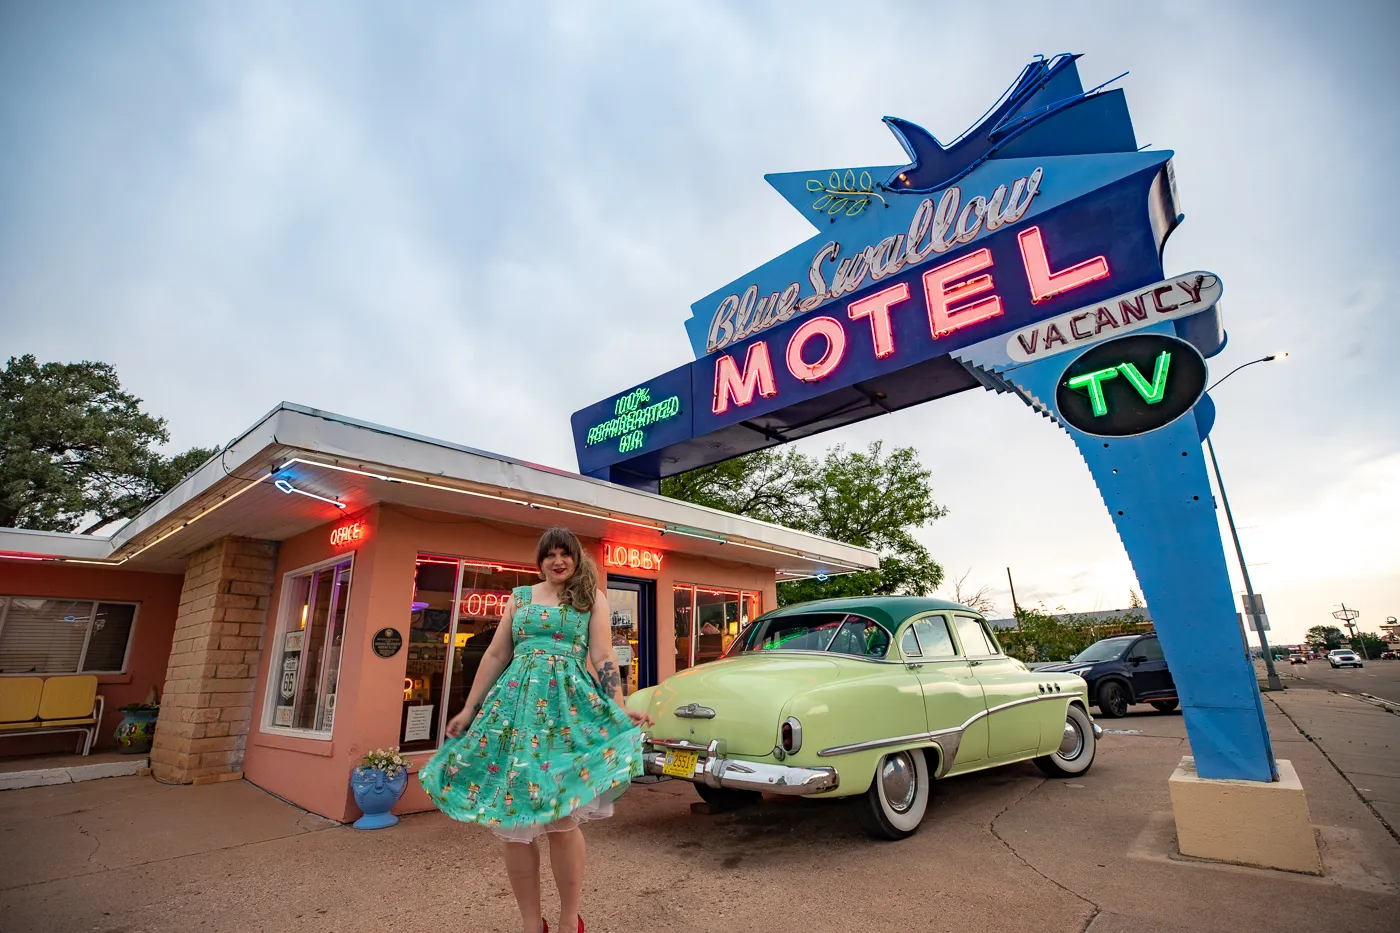 Blue Swallow Motel in Tucumcari, New Mexico (Route 66 Motel)